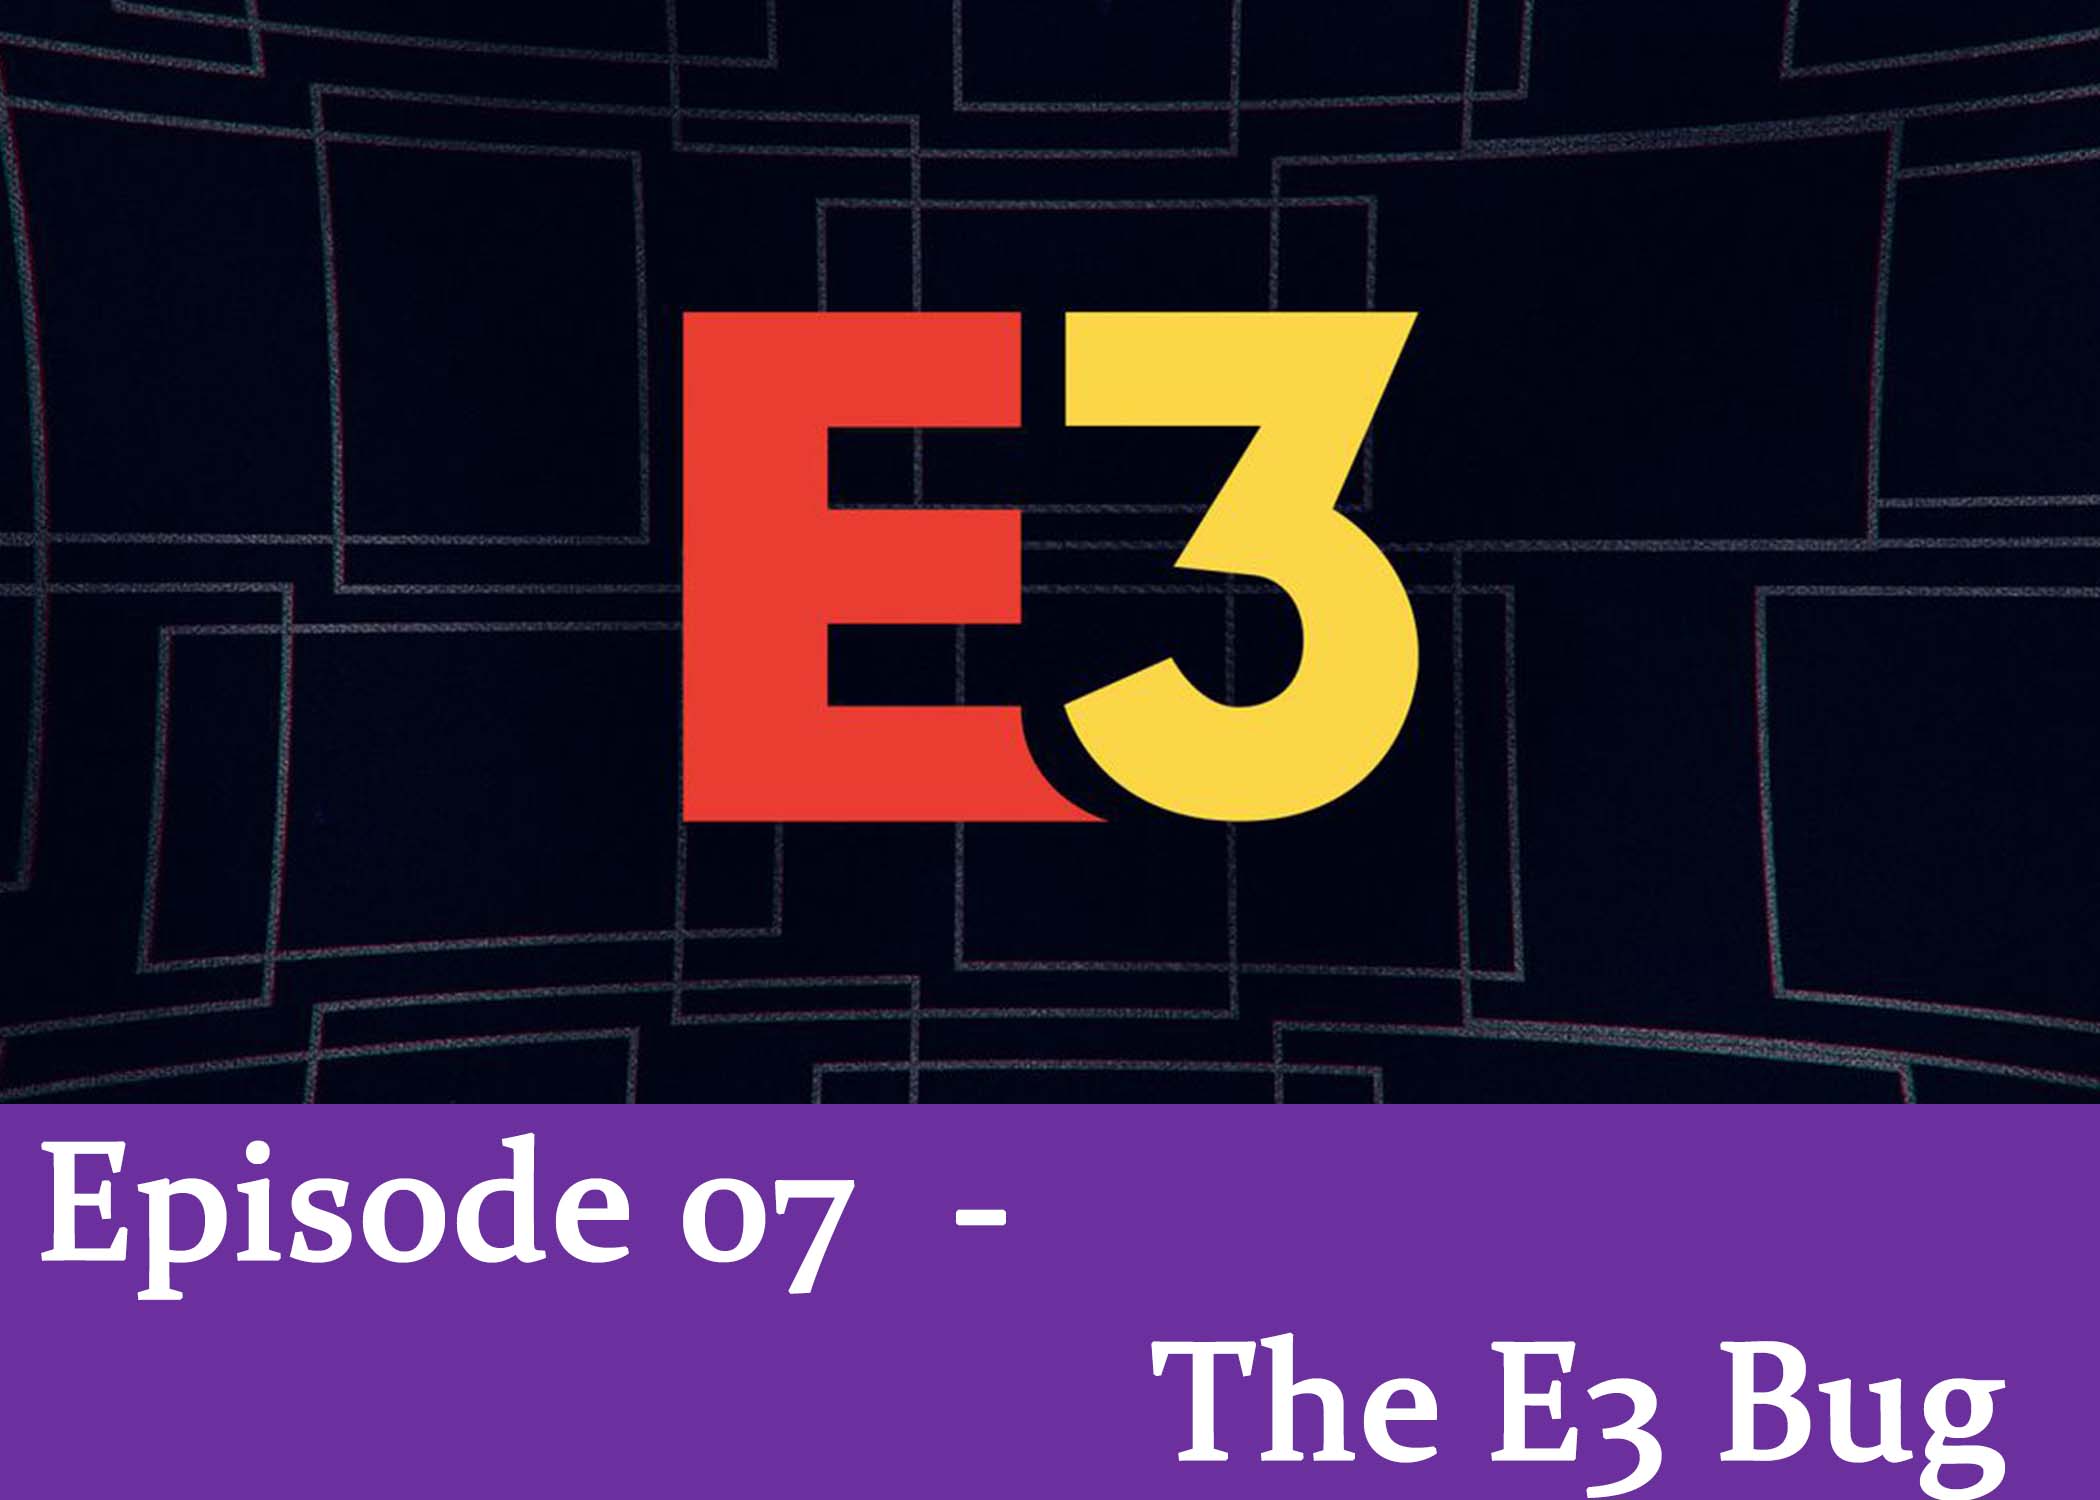 Episode 07 - The E3 Bug